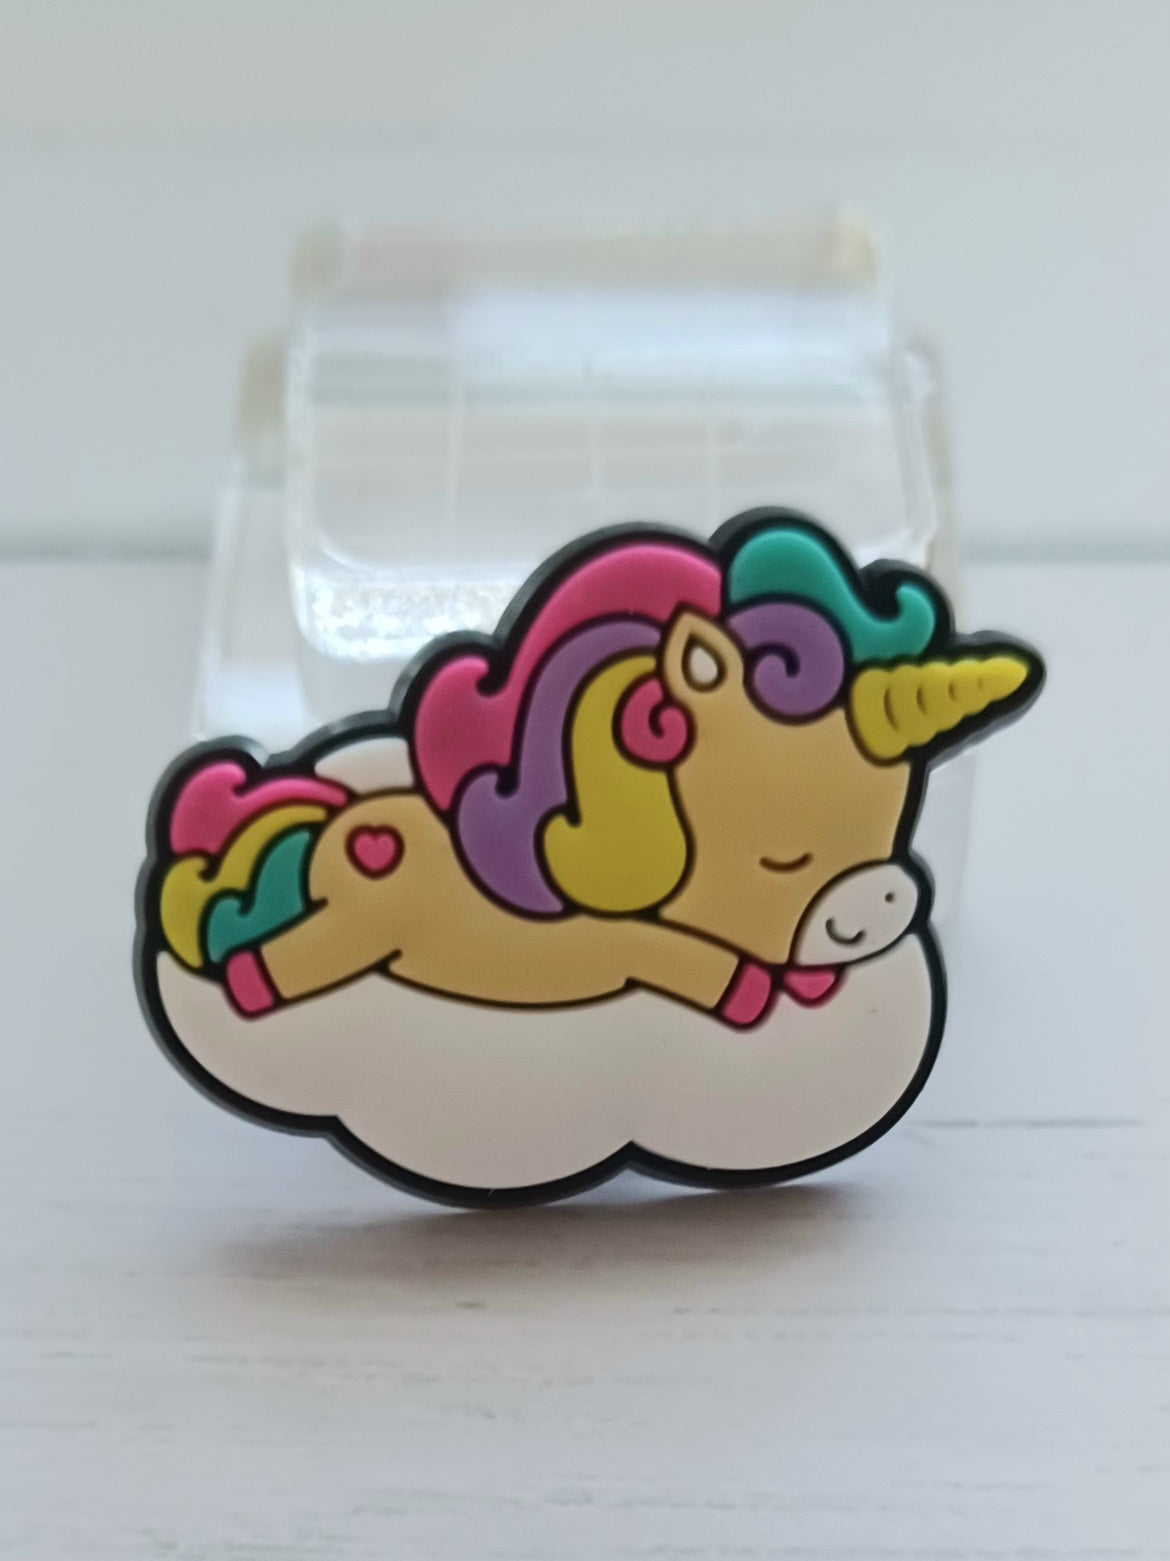 Funny Cute Colorful Unicorn Croc/Shoe/Bracelet Charms